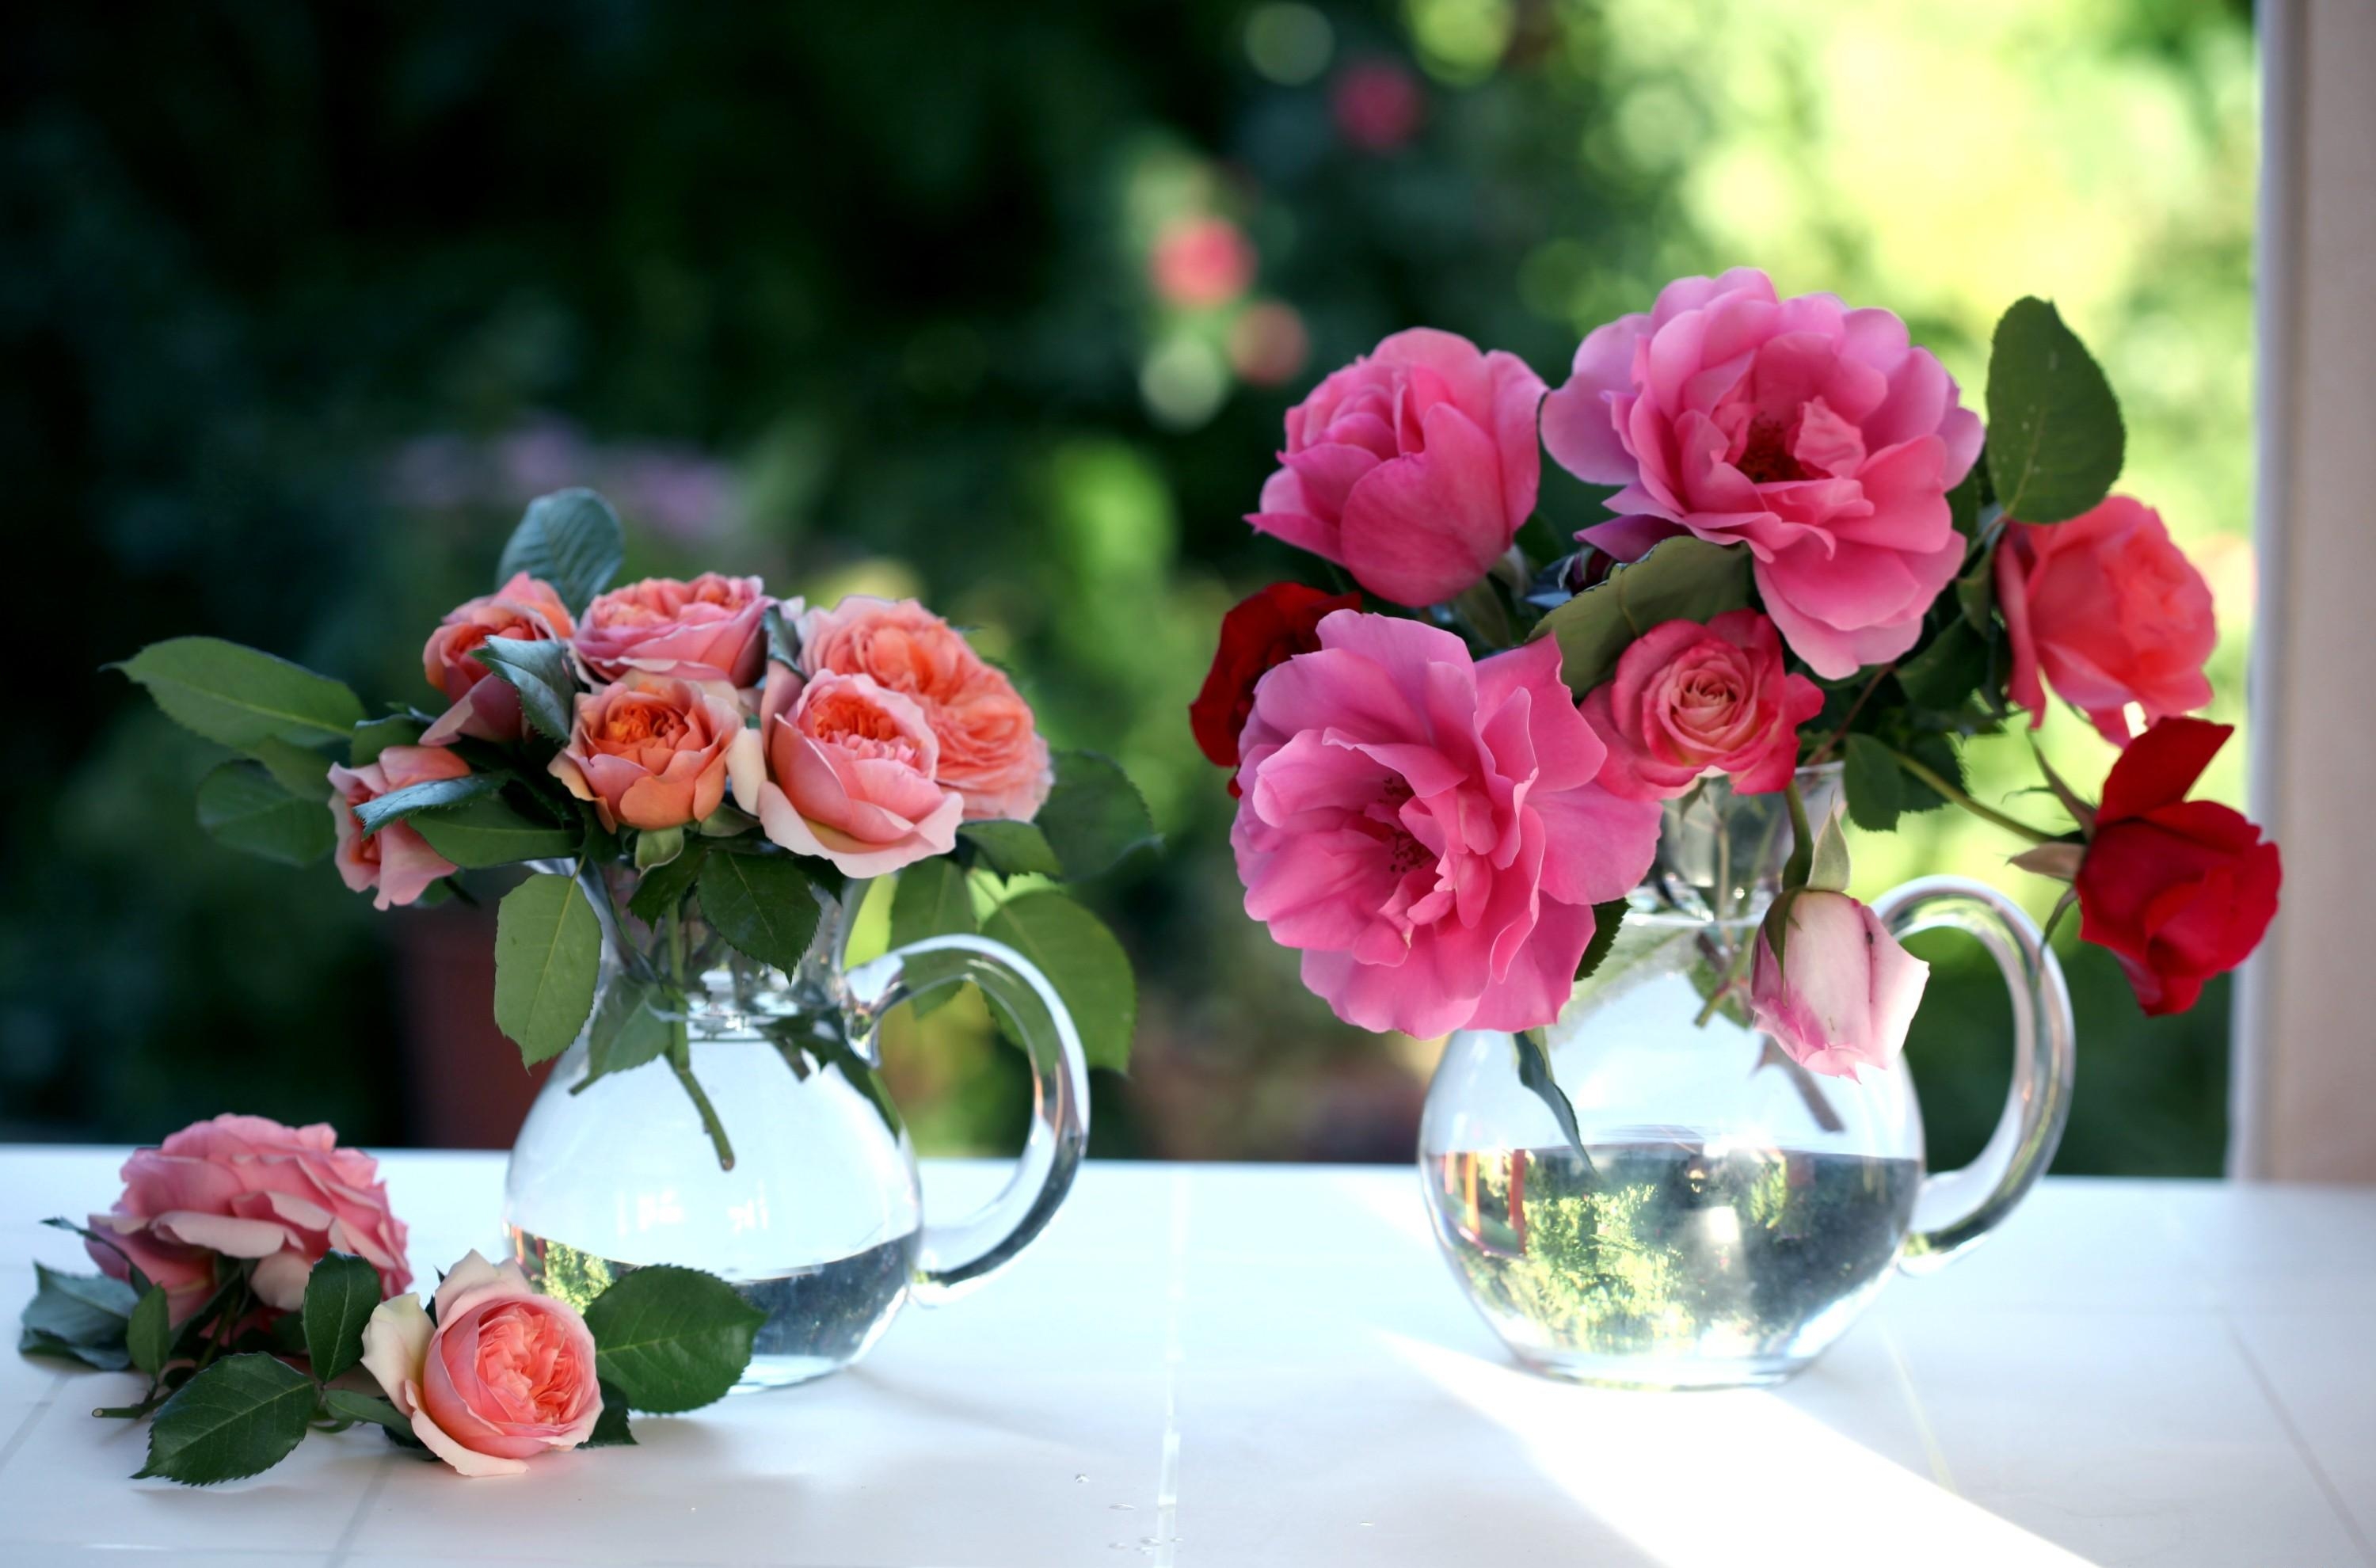 jugs, window, roses, flowers, bouquets